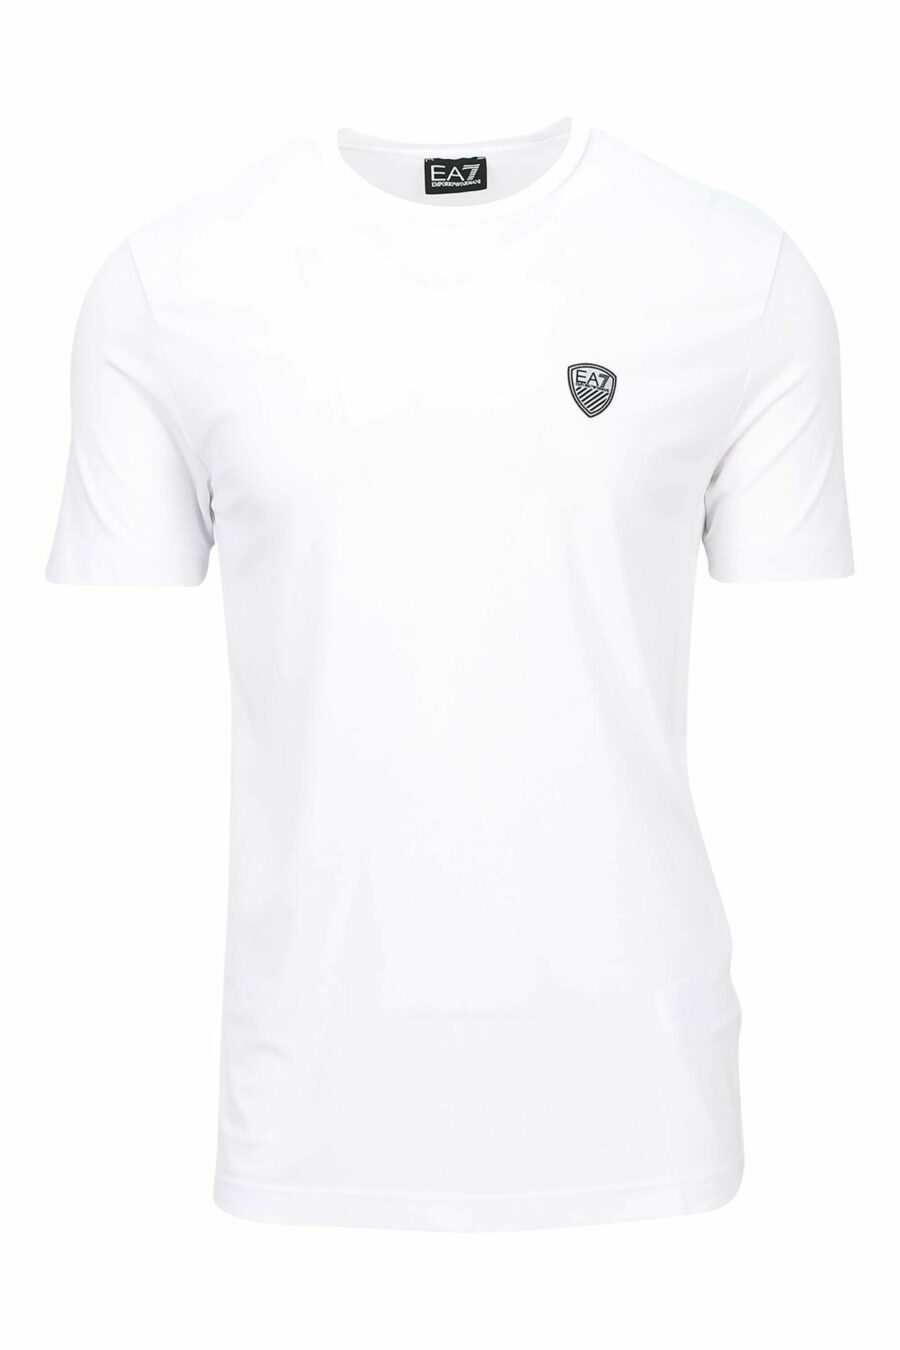 Weißes T-Shirt mit Mini-Logo "lux identity" - 8056787978898 skaliert